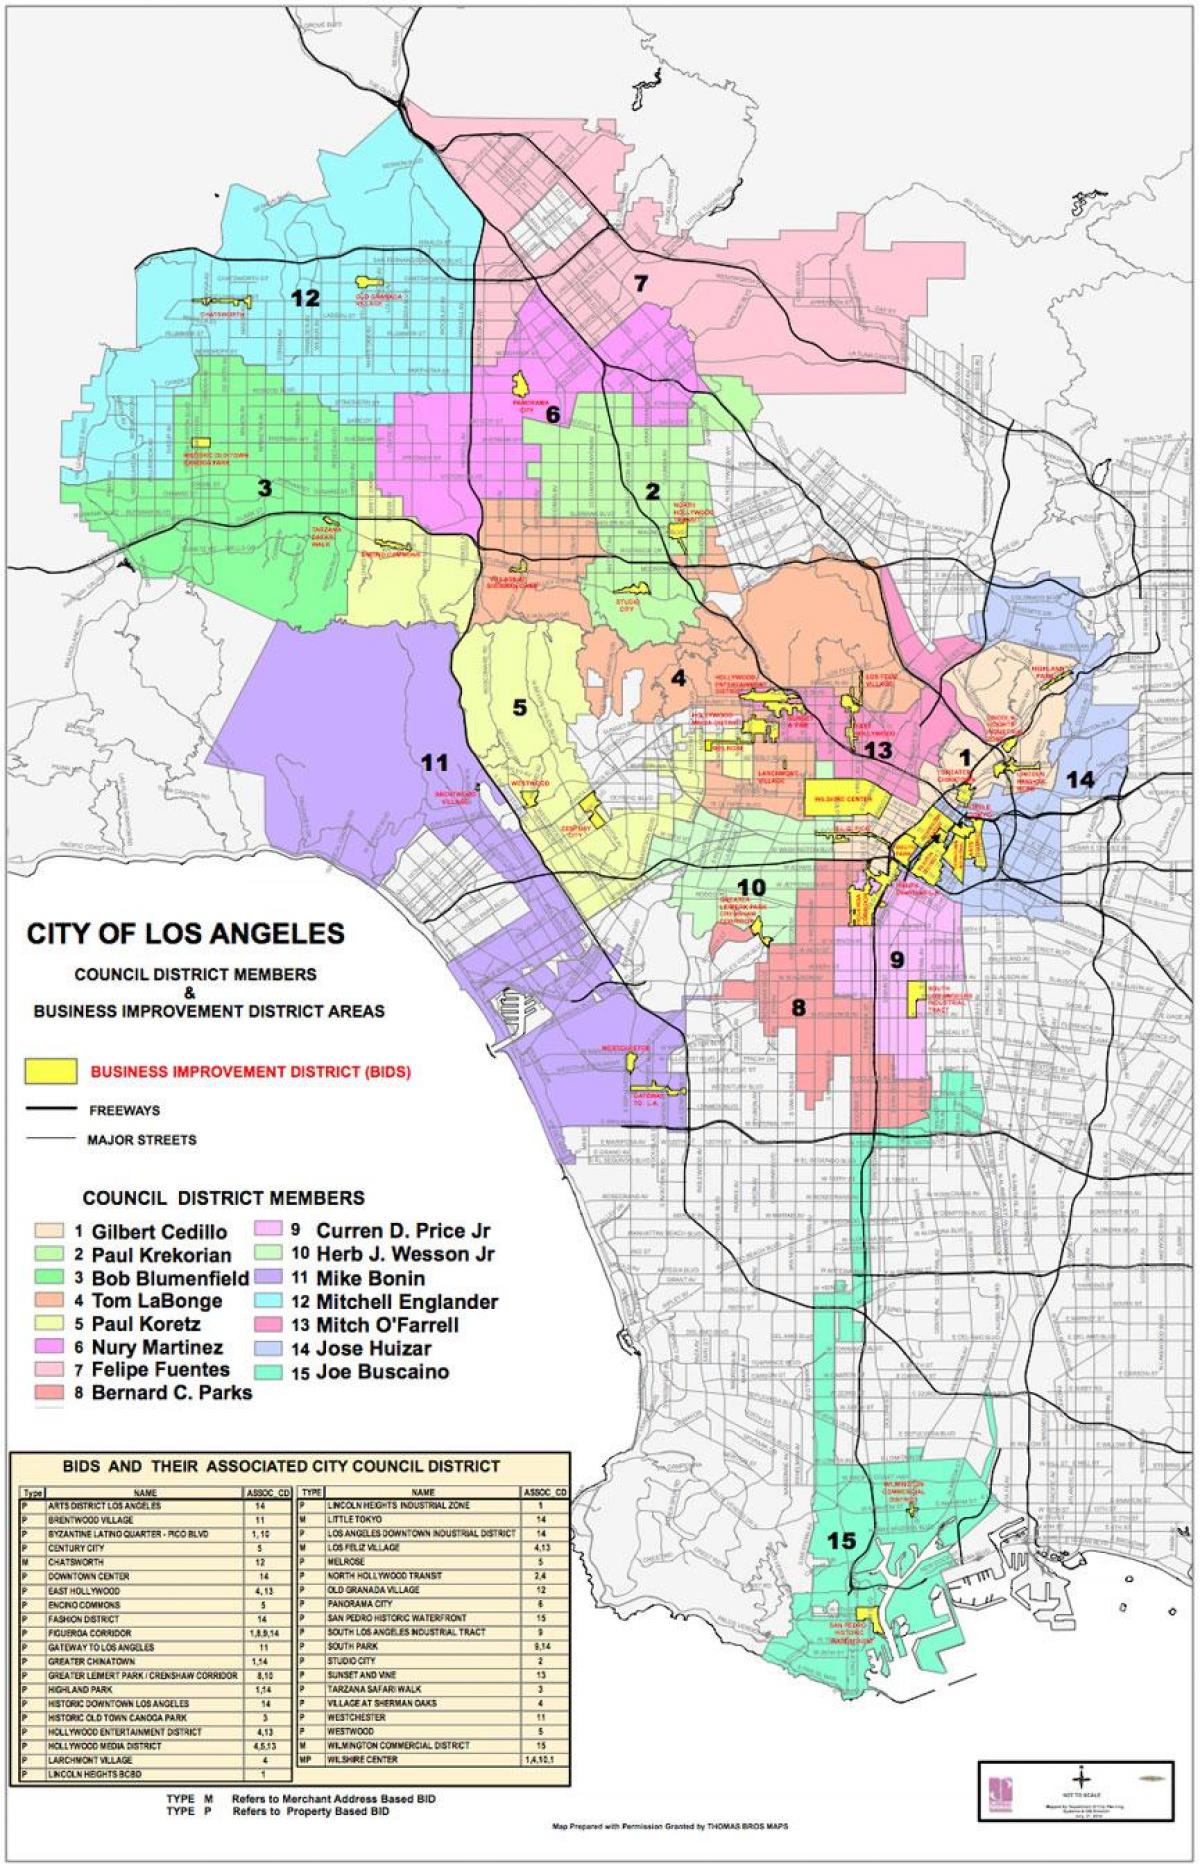 Los Angeles council district anzeigen